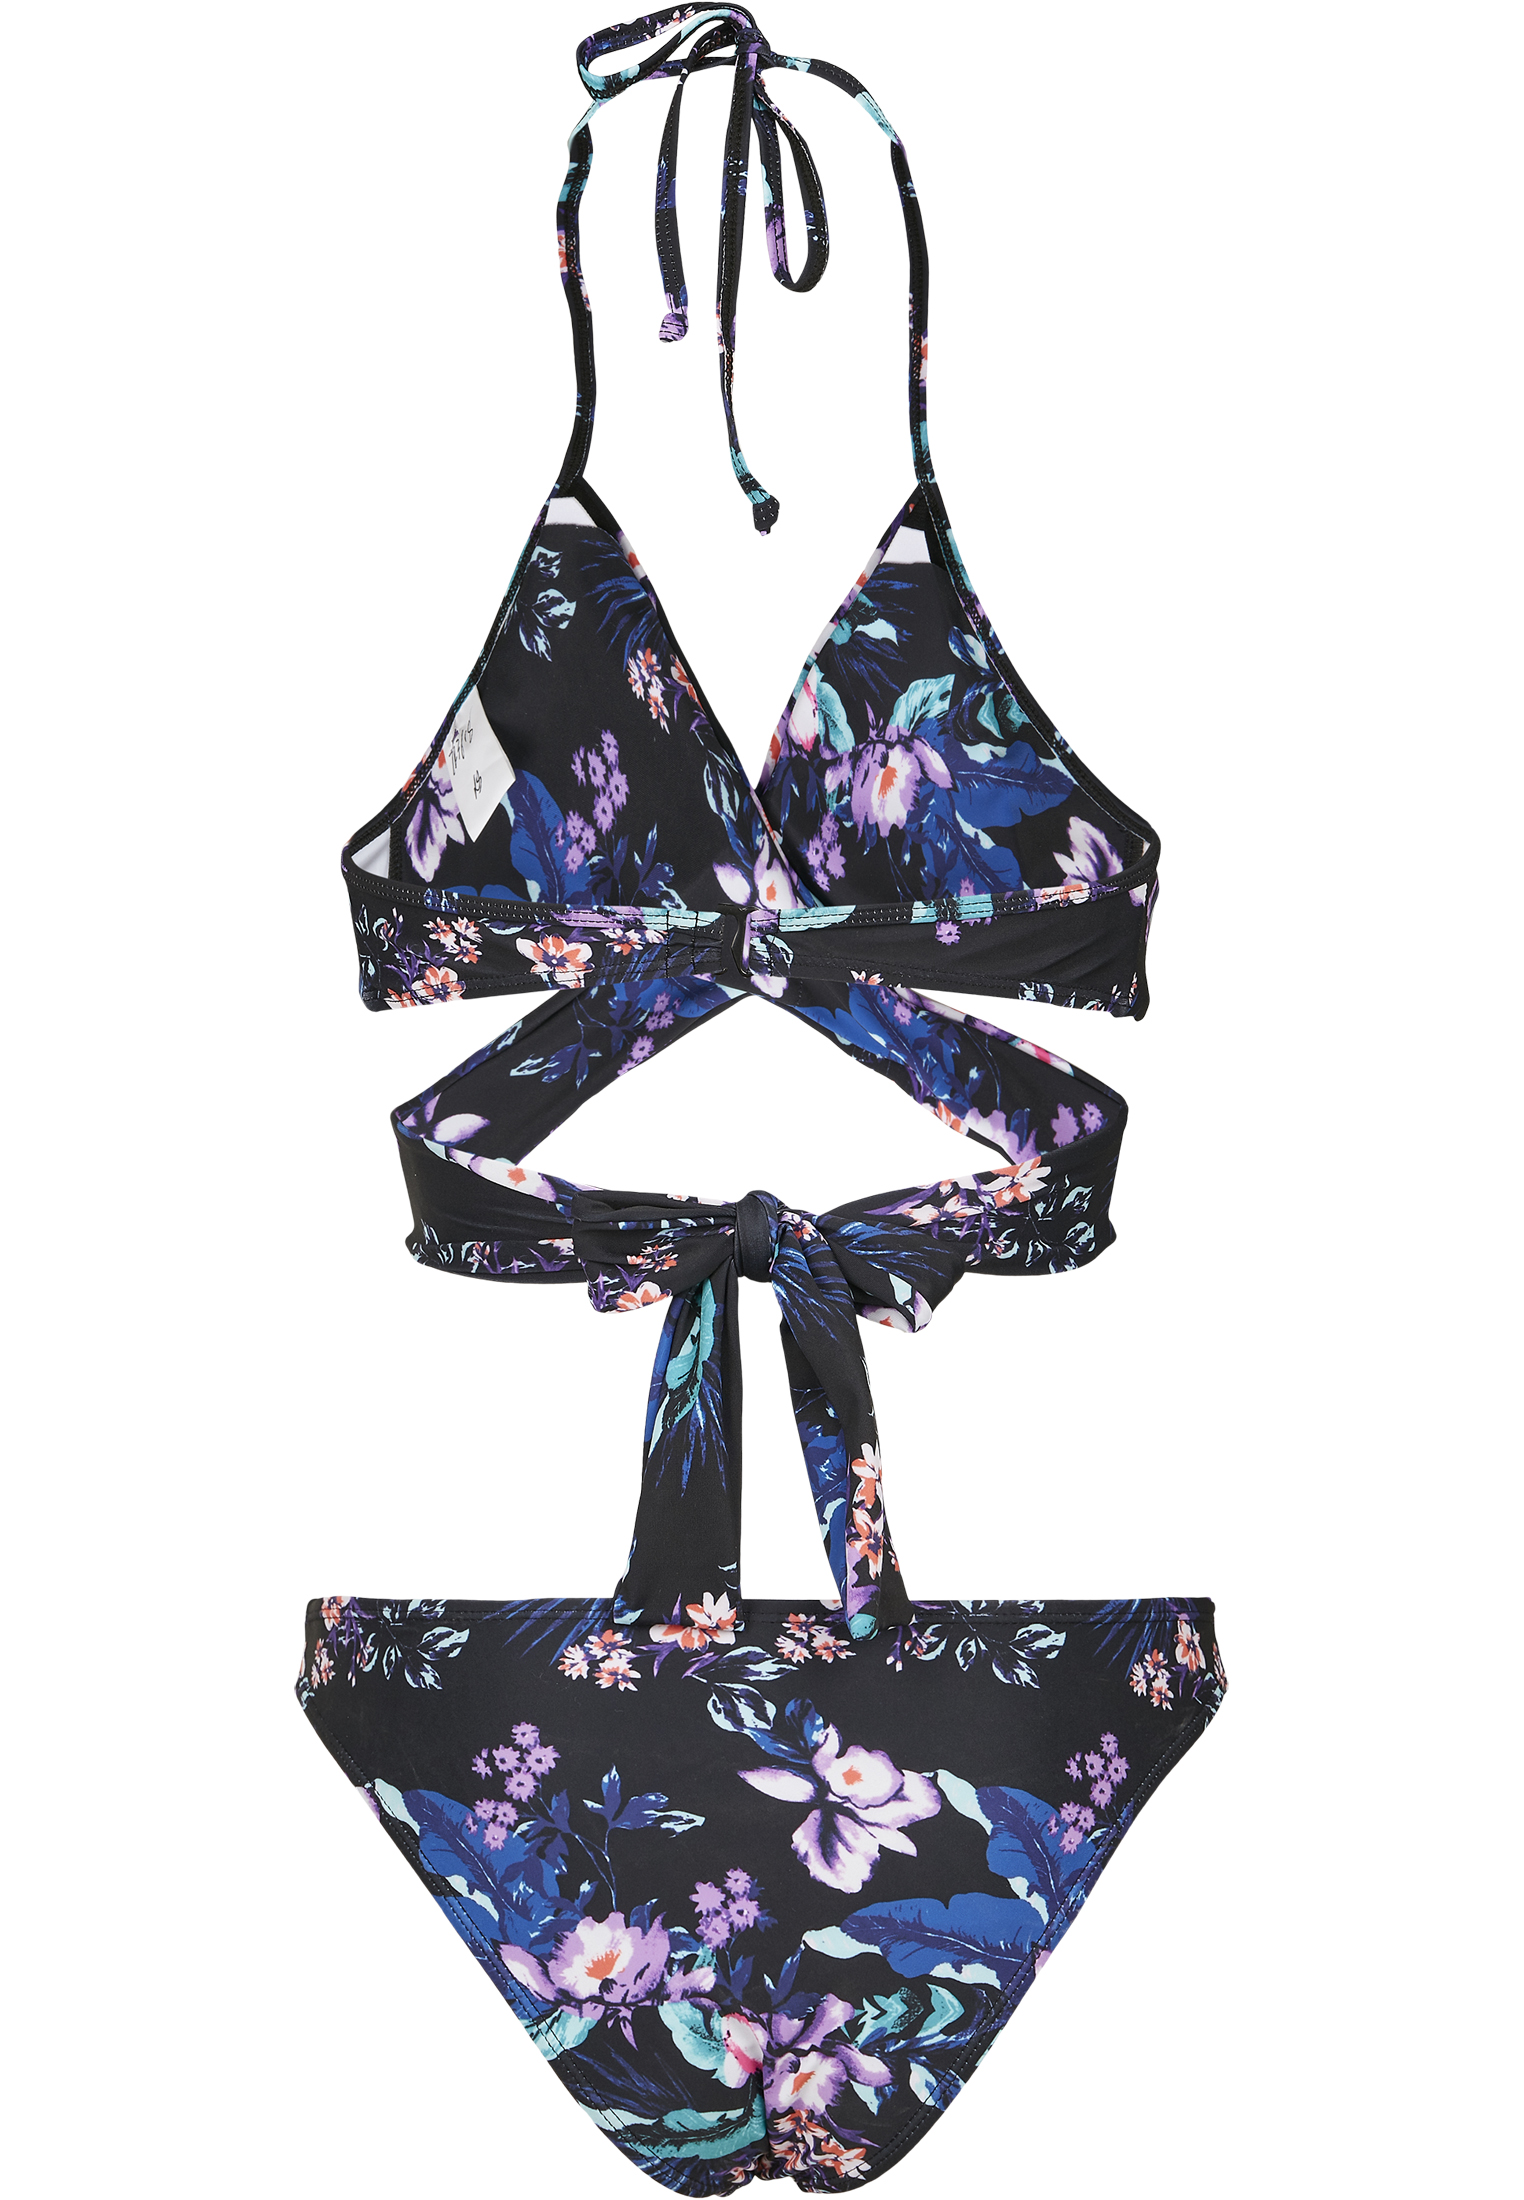 Bademode Ladies Draped Pattern Bikini in Farbe lilacflower